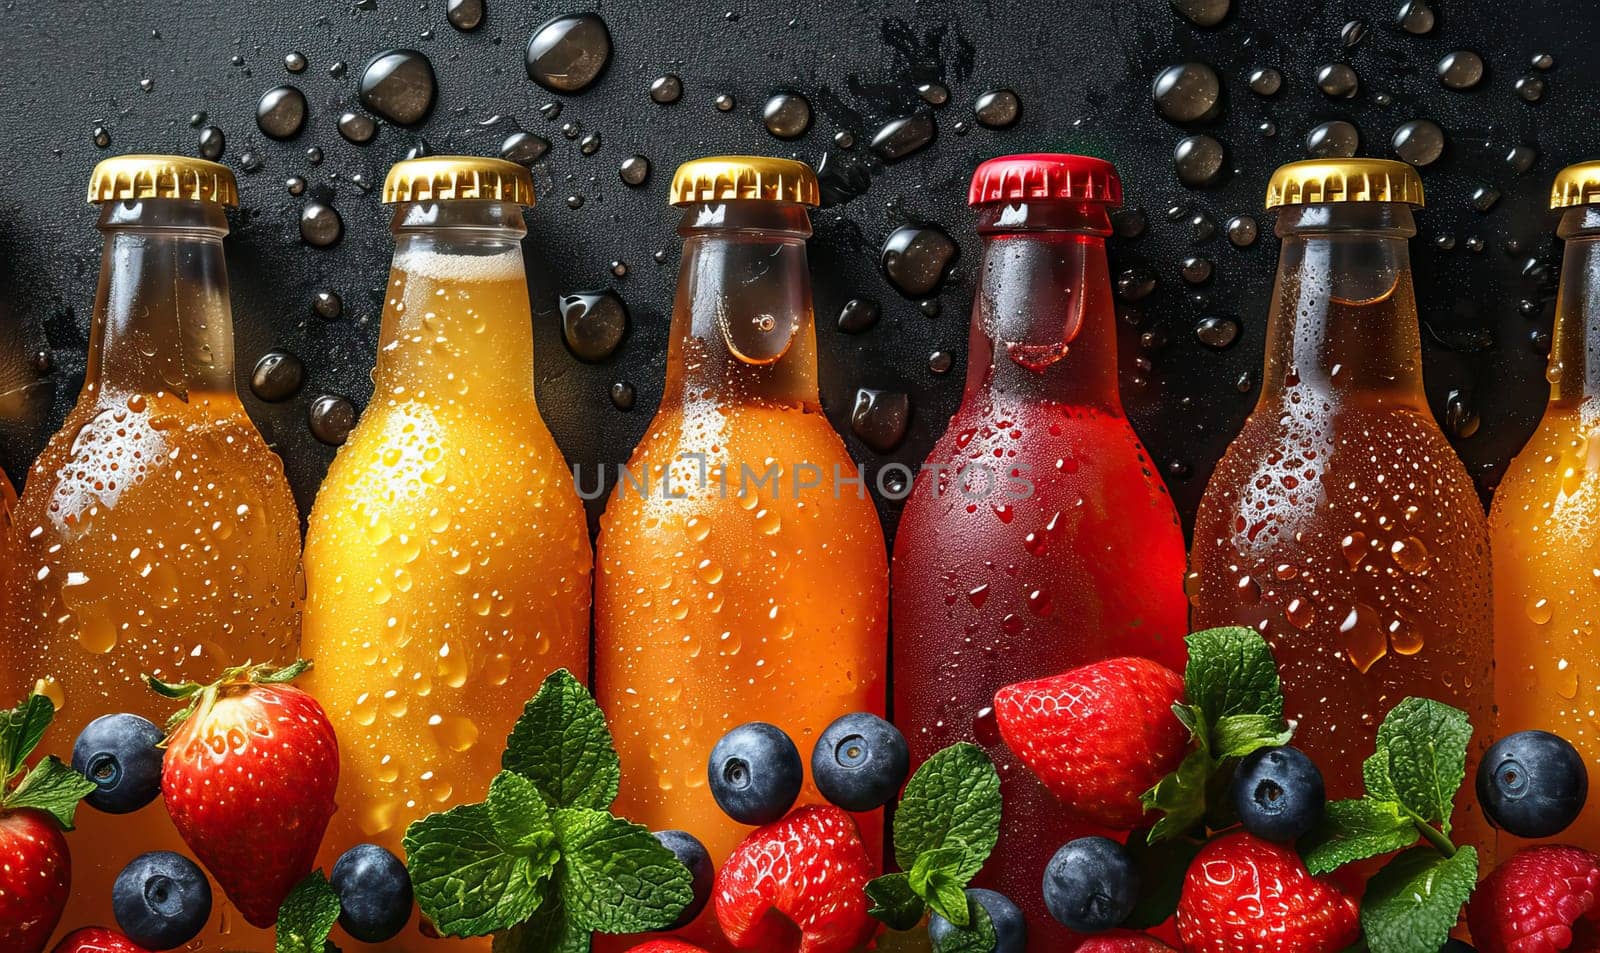 Fruit drinks in bottles on a dark background. by Fischeron